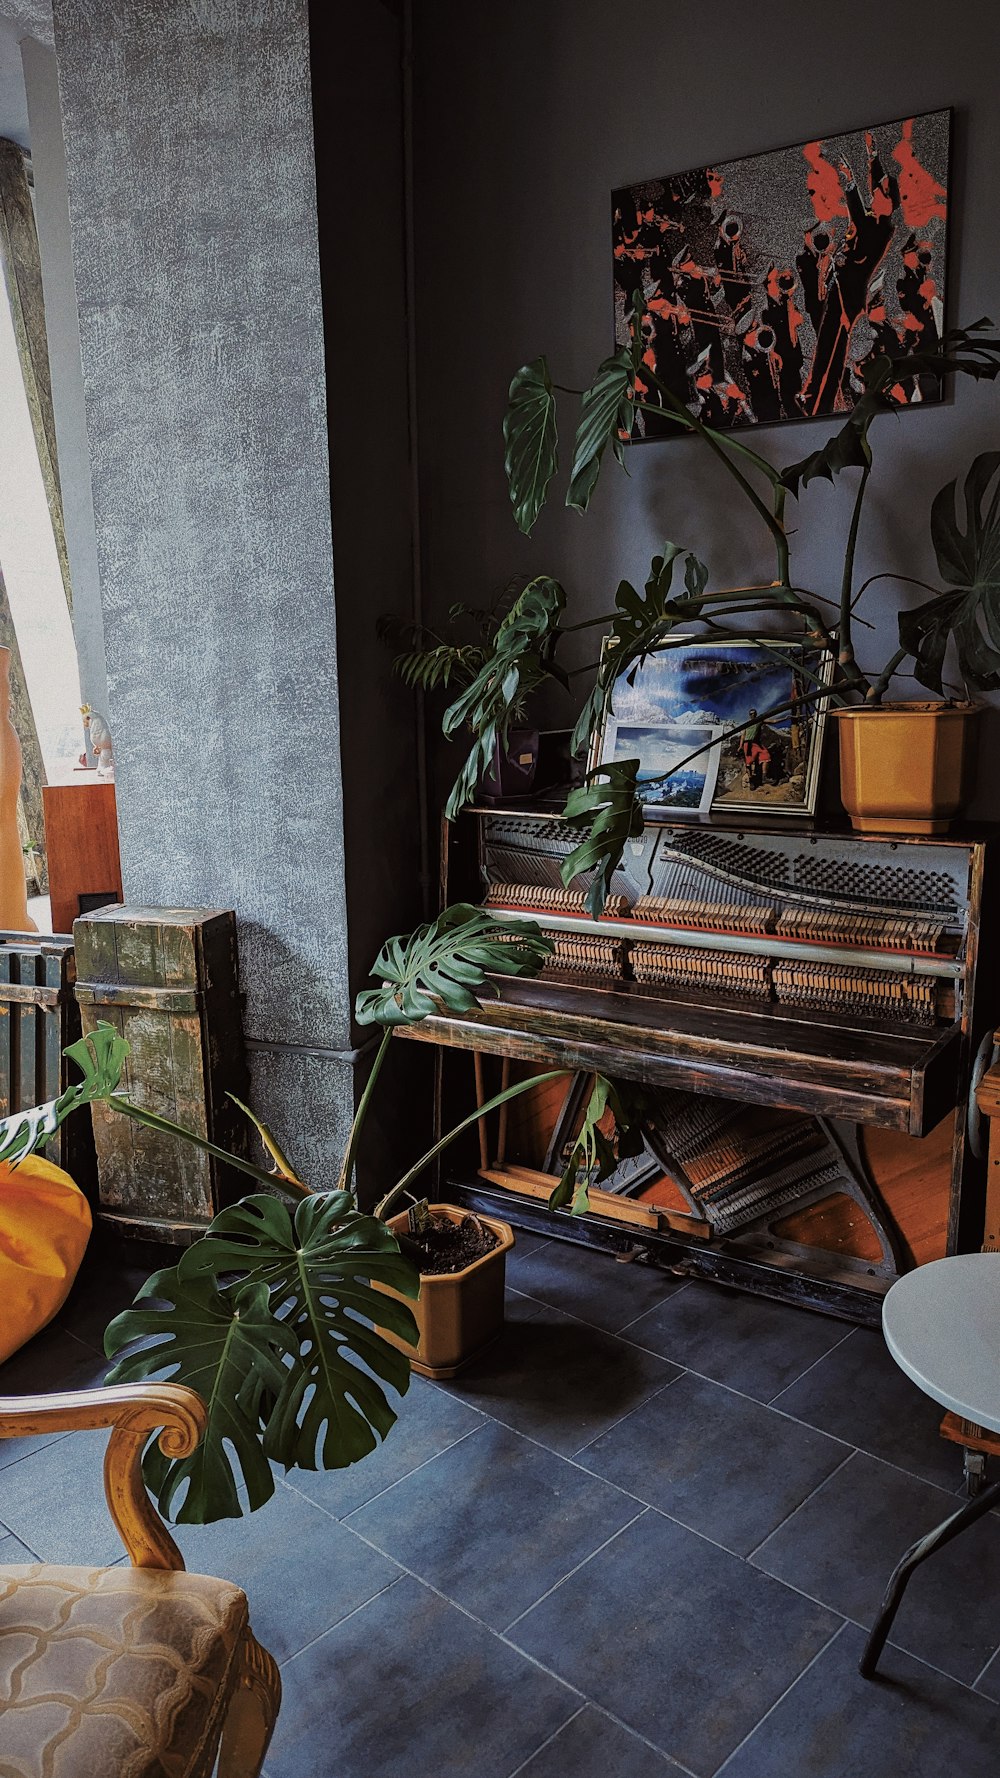 una sala de estar con un piano y una planta en maceta